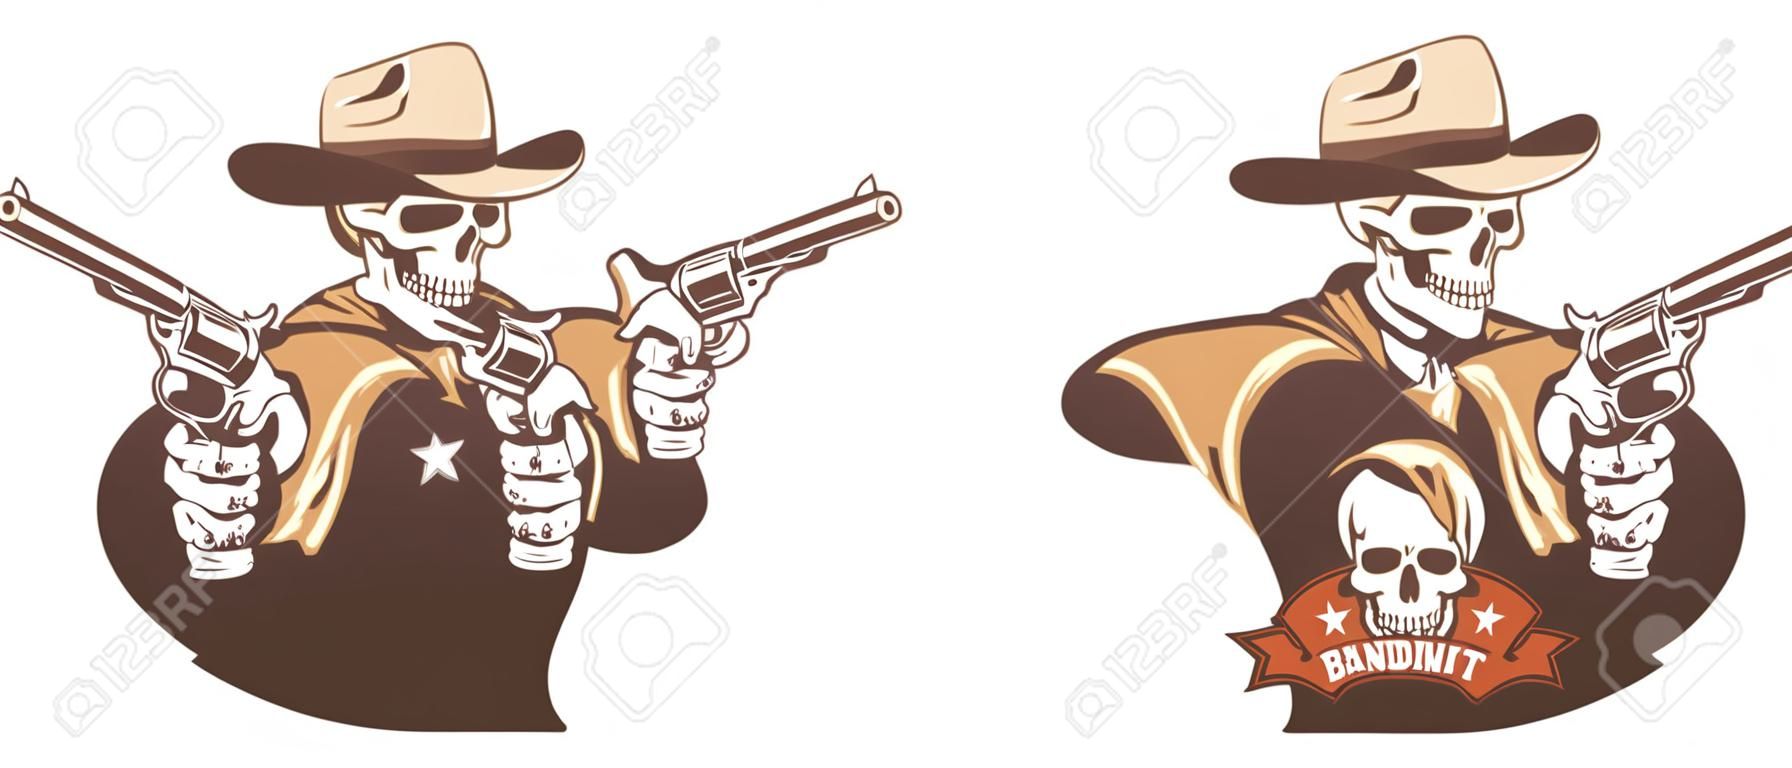 Teschio cowboy western bandito con pistole